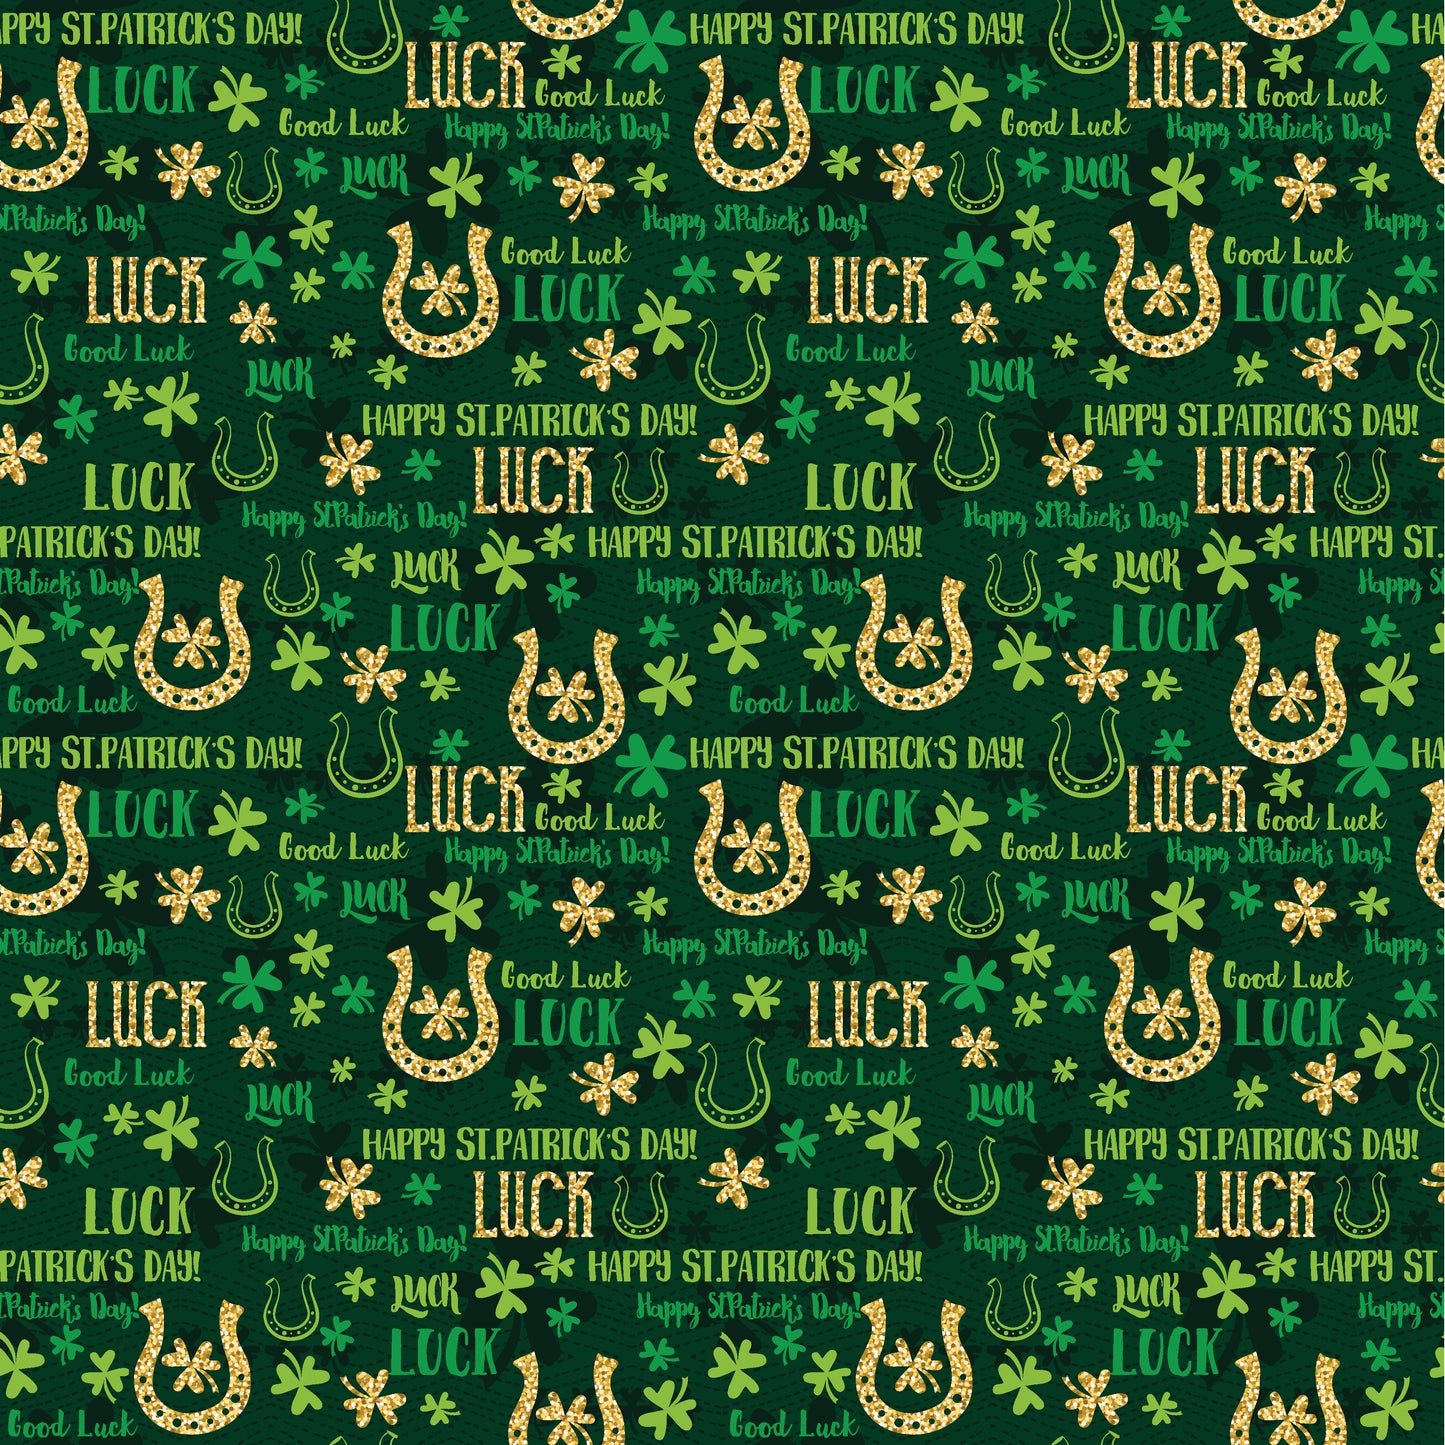 Lucky - Irish Luck Scrapbook Paper 12x12